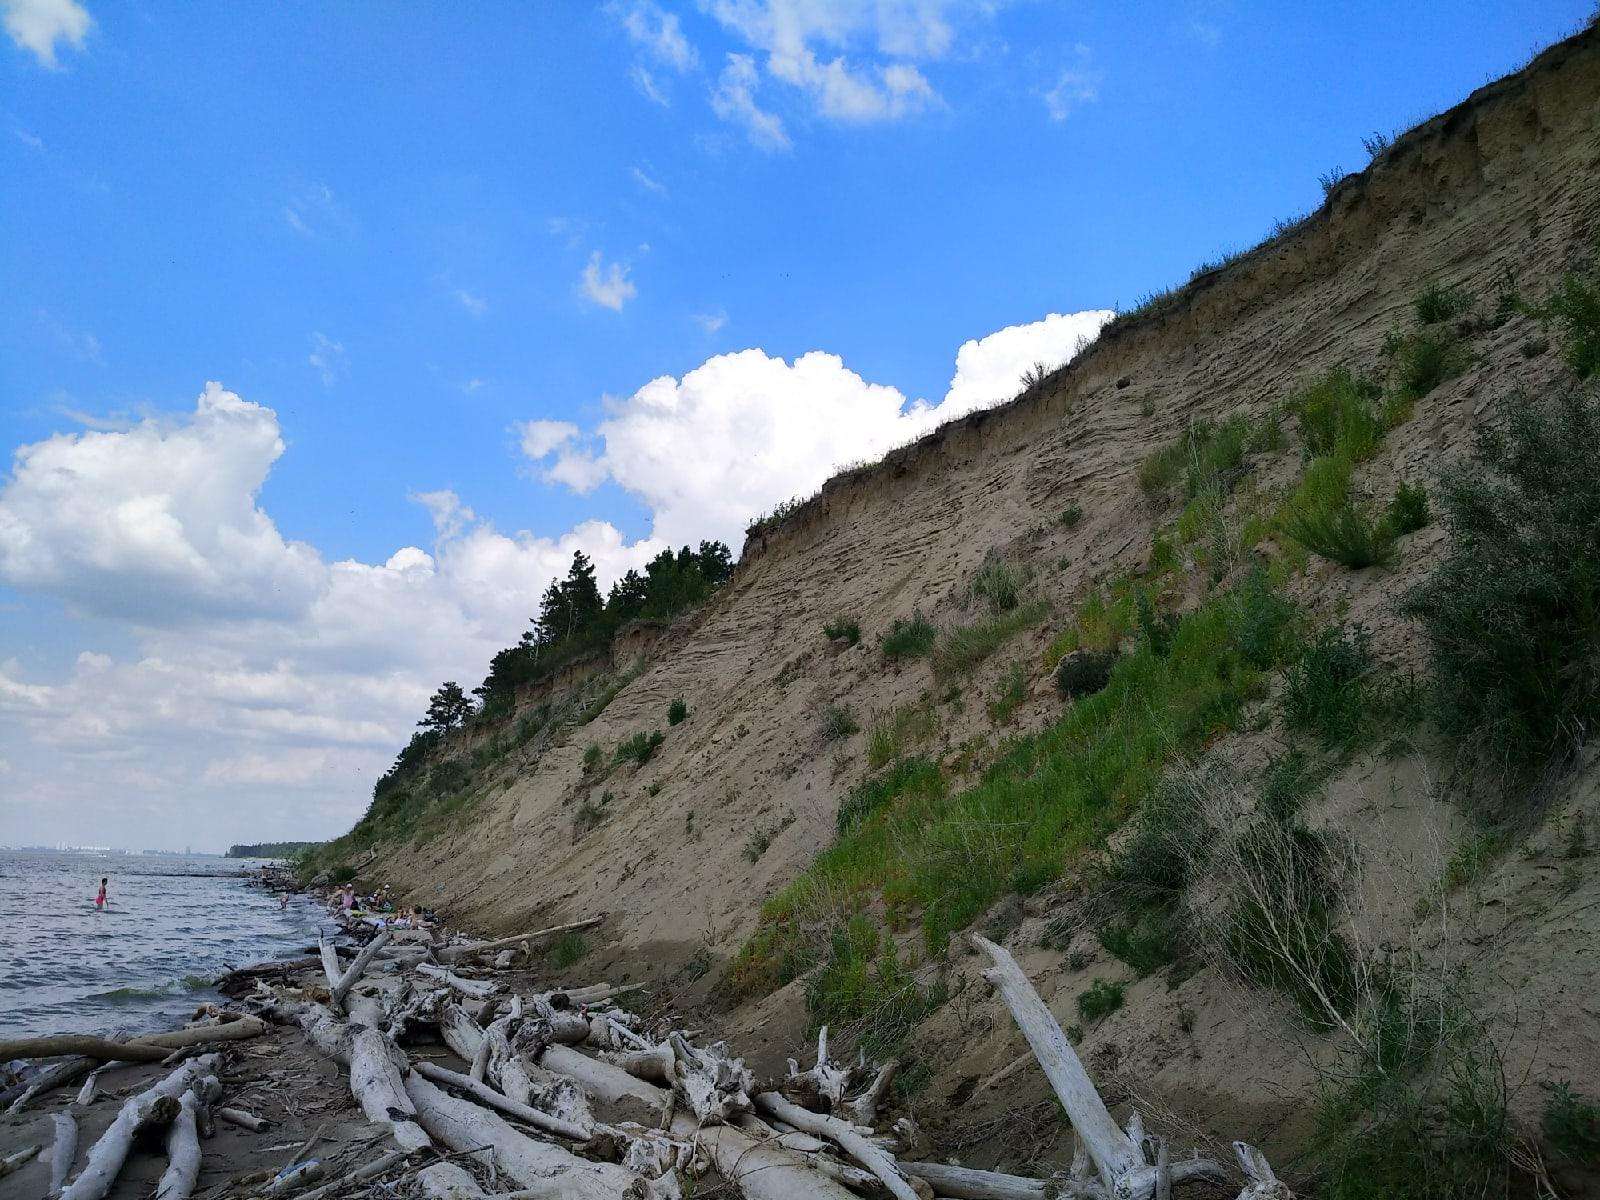 155 га лесов Бердска могут временно лишить статуса памятника природы из-за укрепления берегов 